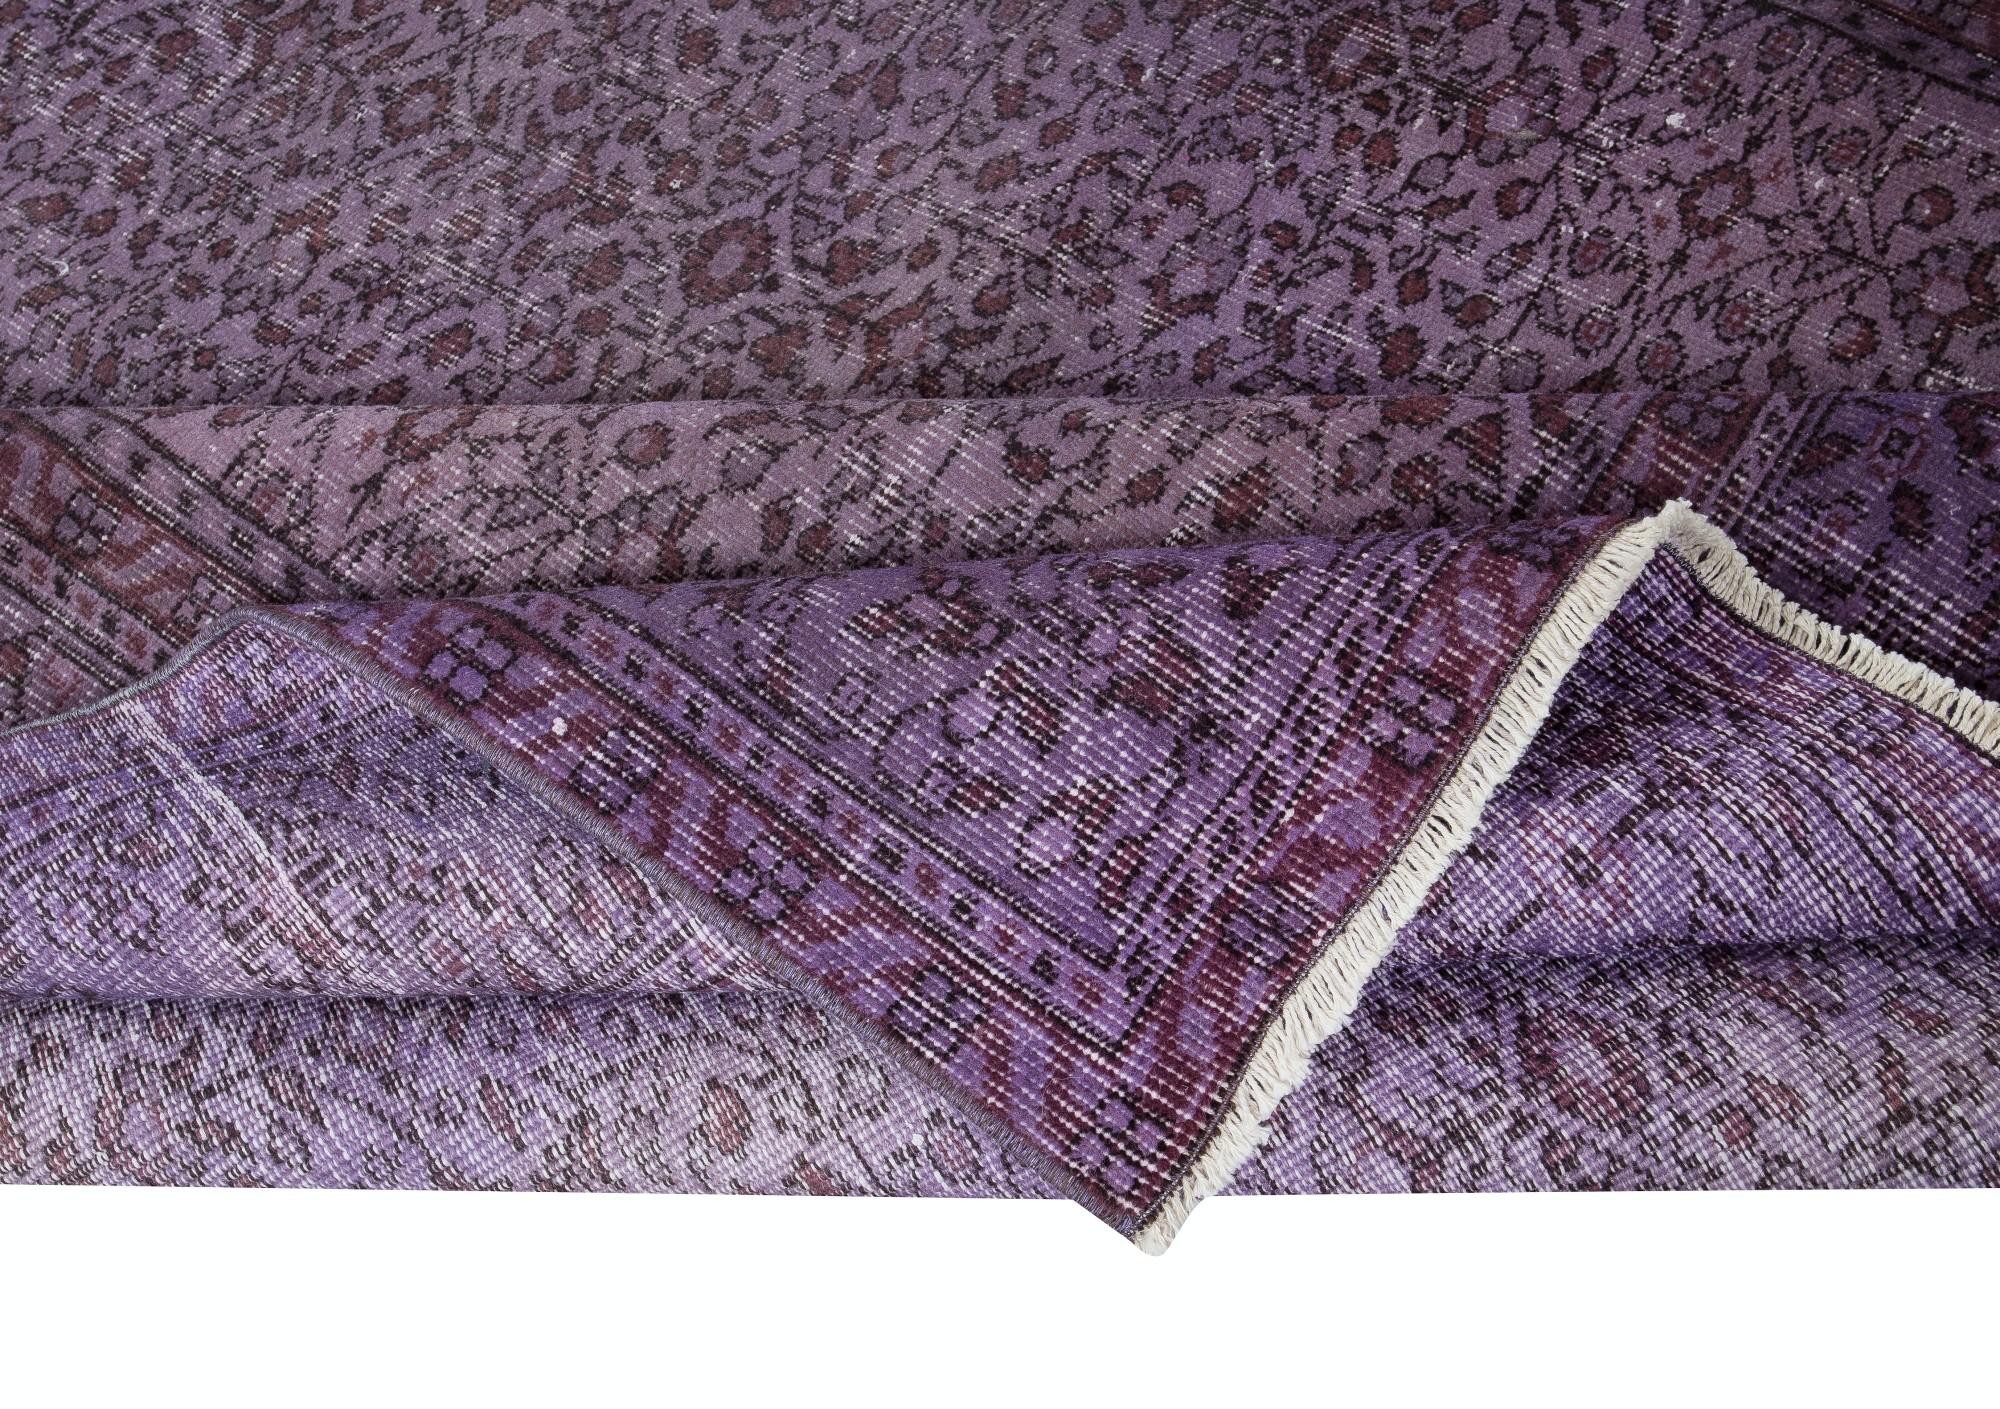 6.2x9.3 Ft Prächtige handgefertigte türkische Teppich mit Blumen-Design & lila Hintergrund (Türkisch)